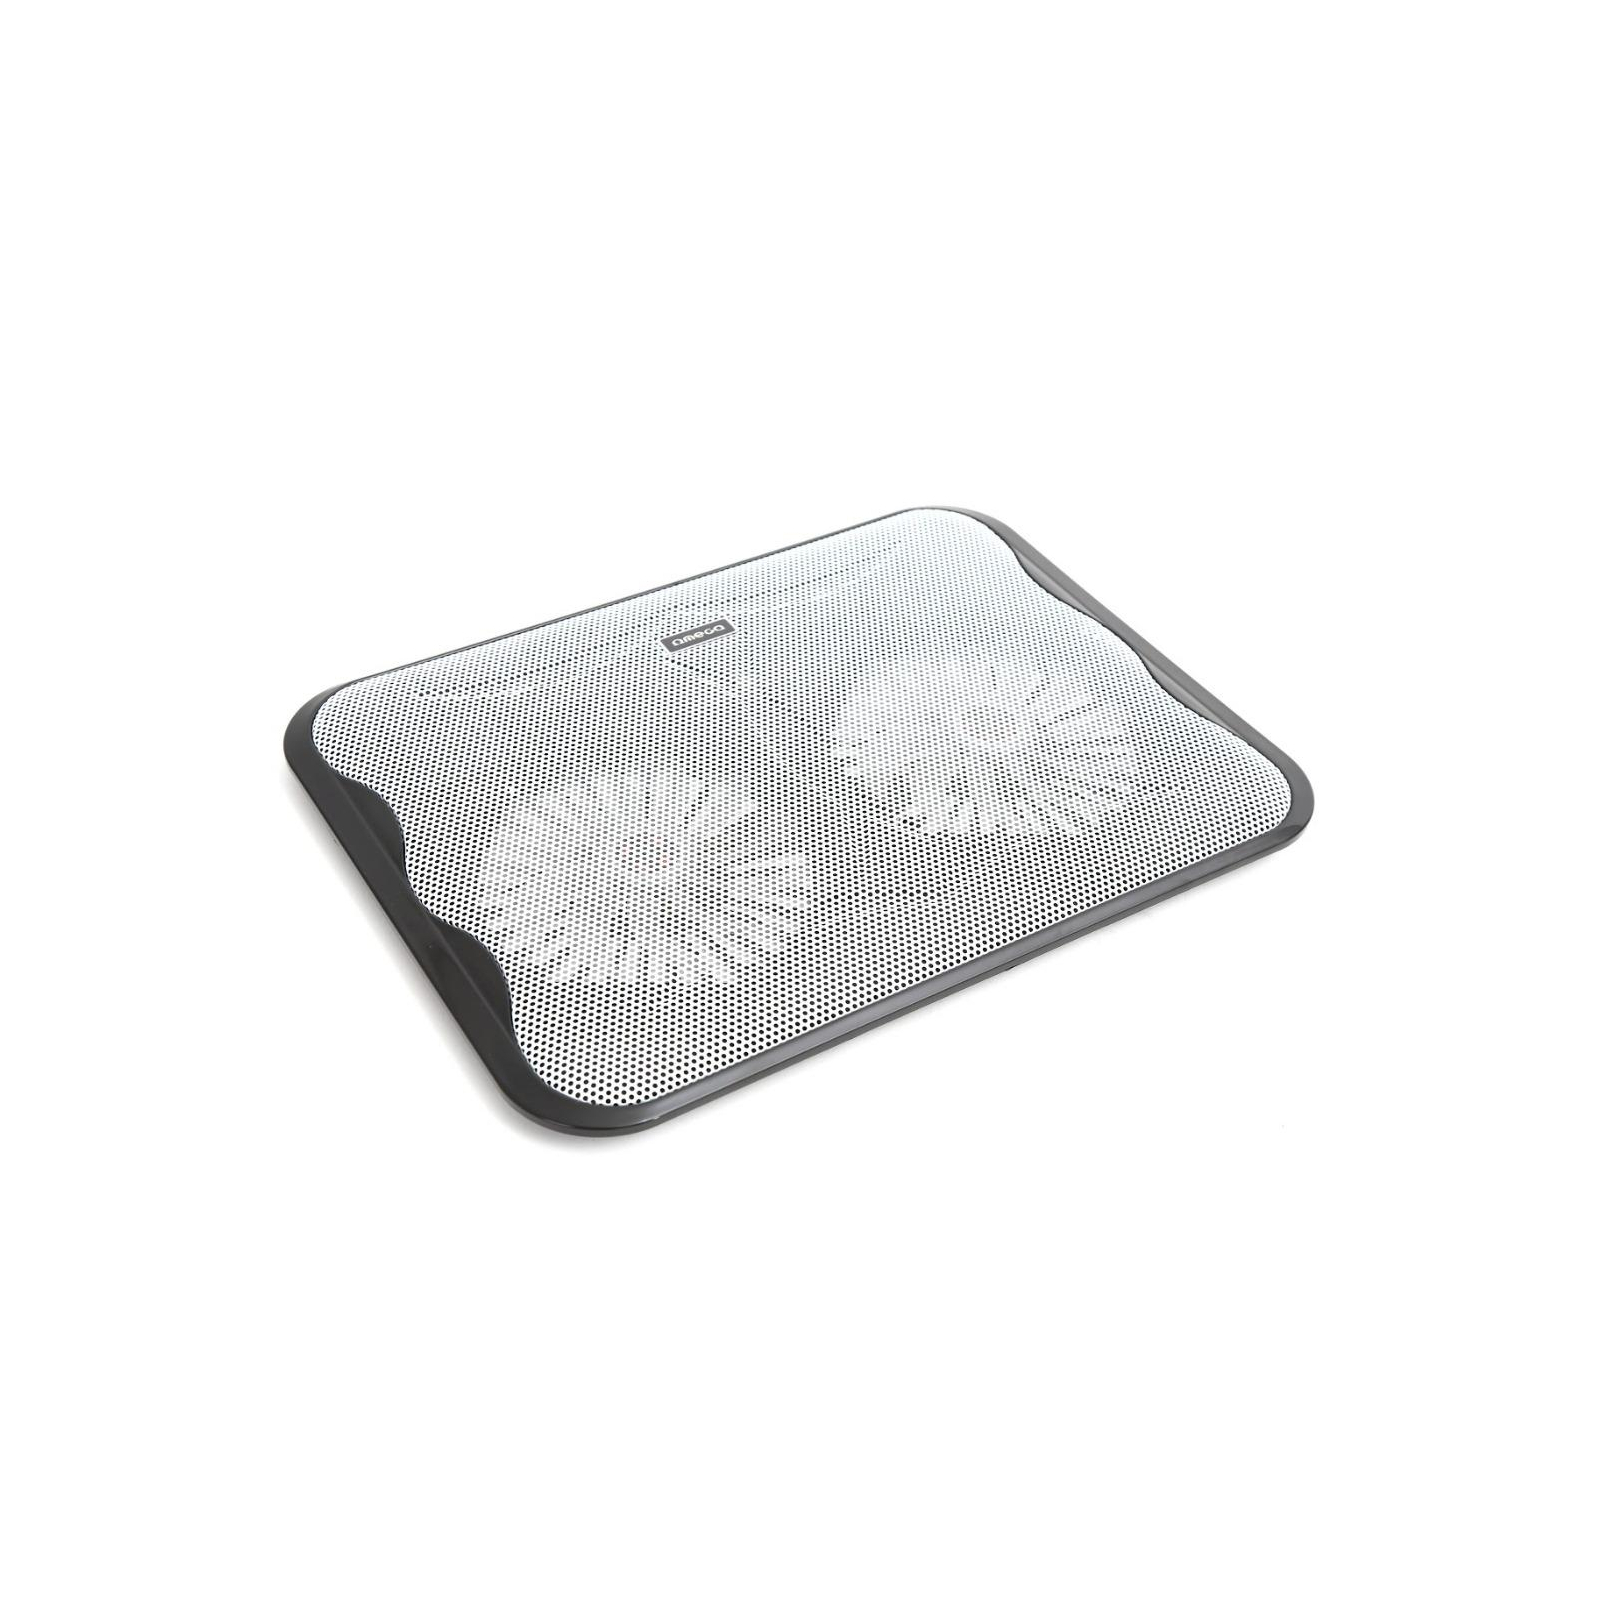 Подставка для ноутбука Omega Laptop Cooler pad "ICE CUBE" 14cm fan USB port black (OMNCPC)